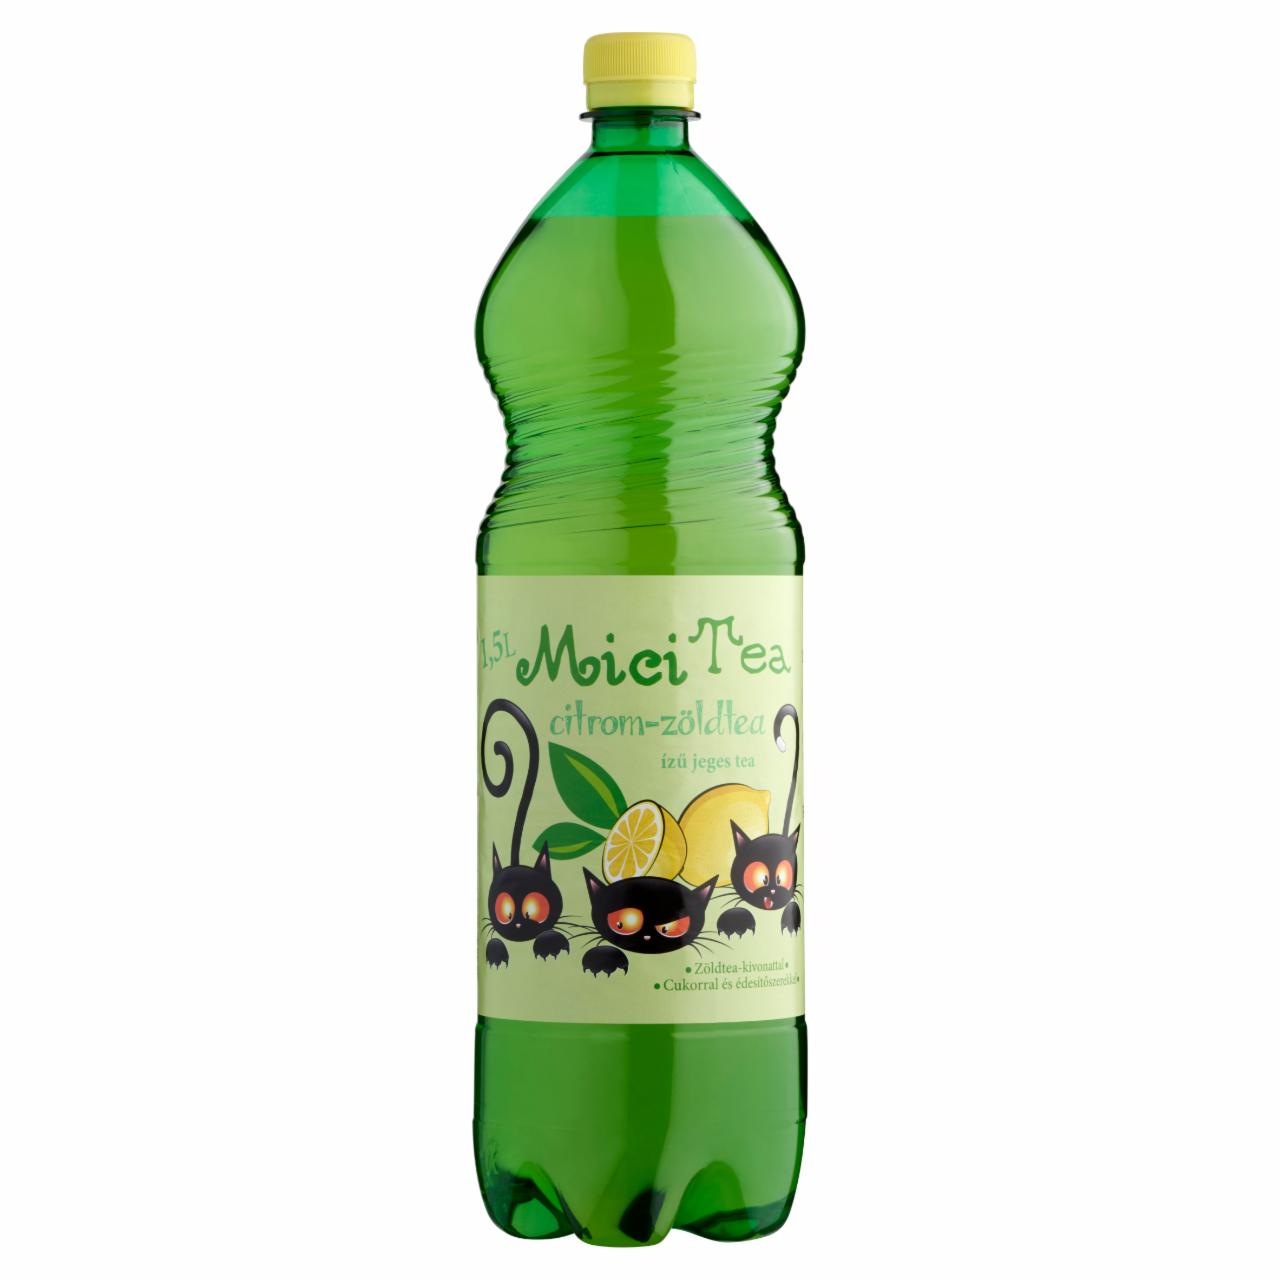 Képek - Mici Tea citrom-zöldtea ízű jeges tea cukorral és édesítőszerekkel 1,5 l